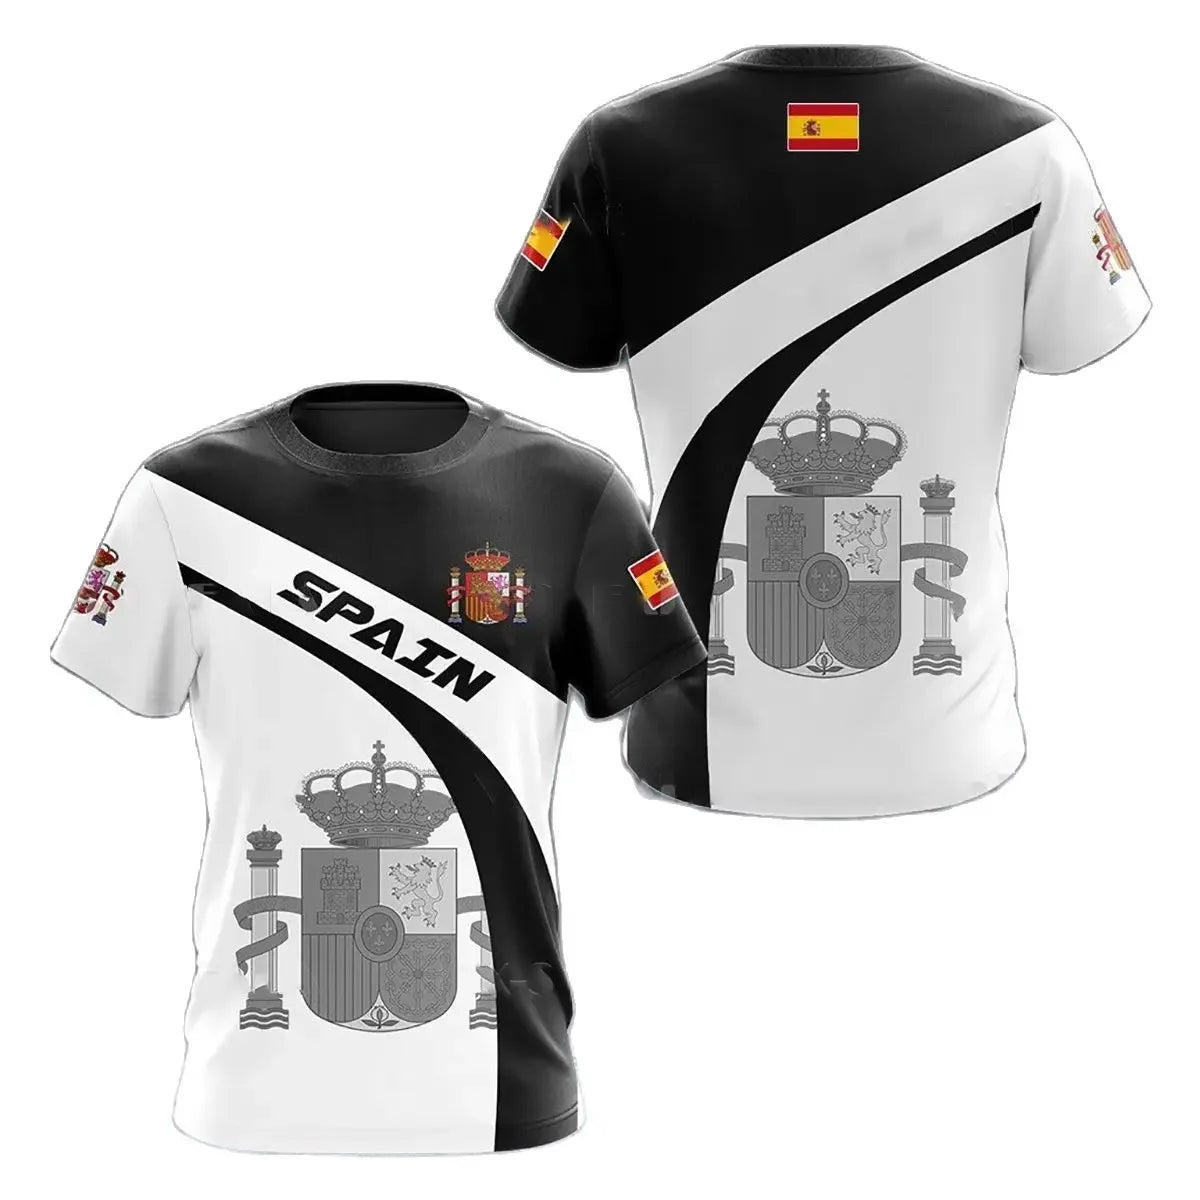 SPANIEN Spanien National Emblem Gedruckt 3D männer T-Shirt, Kurzarm Mode Coole Kleidung Große Größe Lose Shirt für Männer